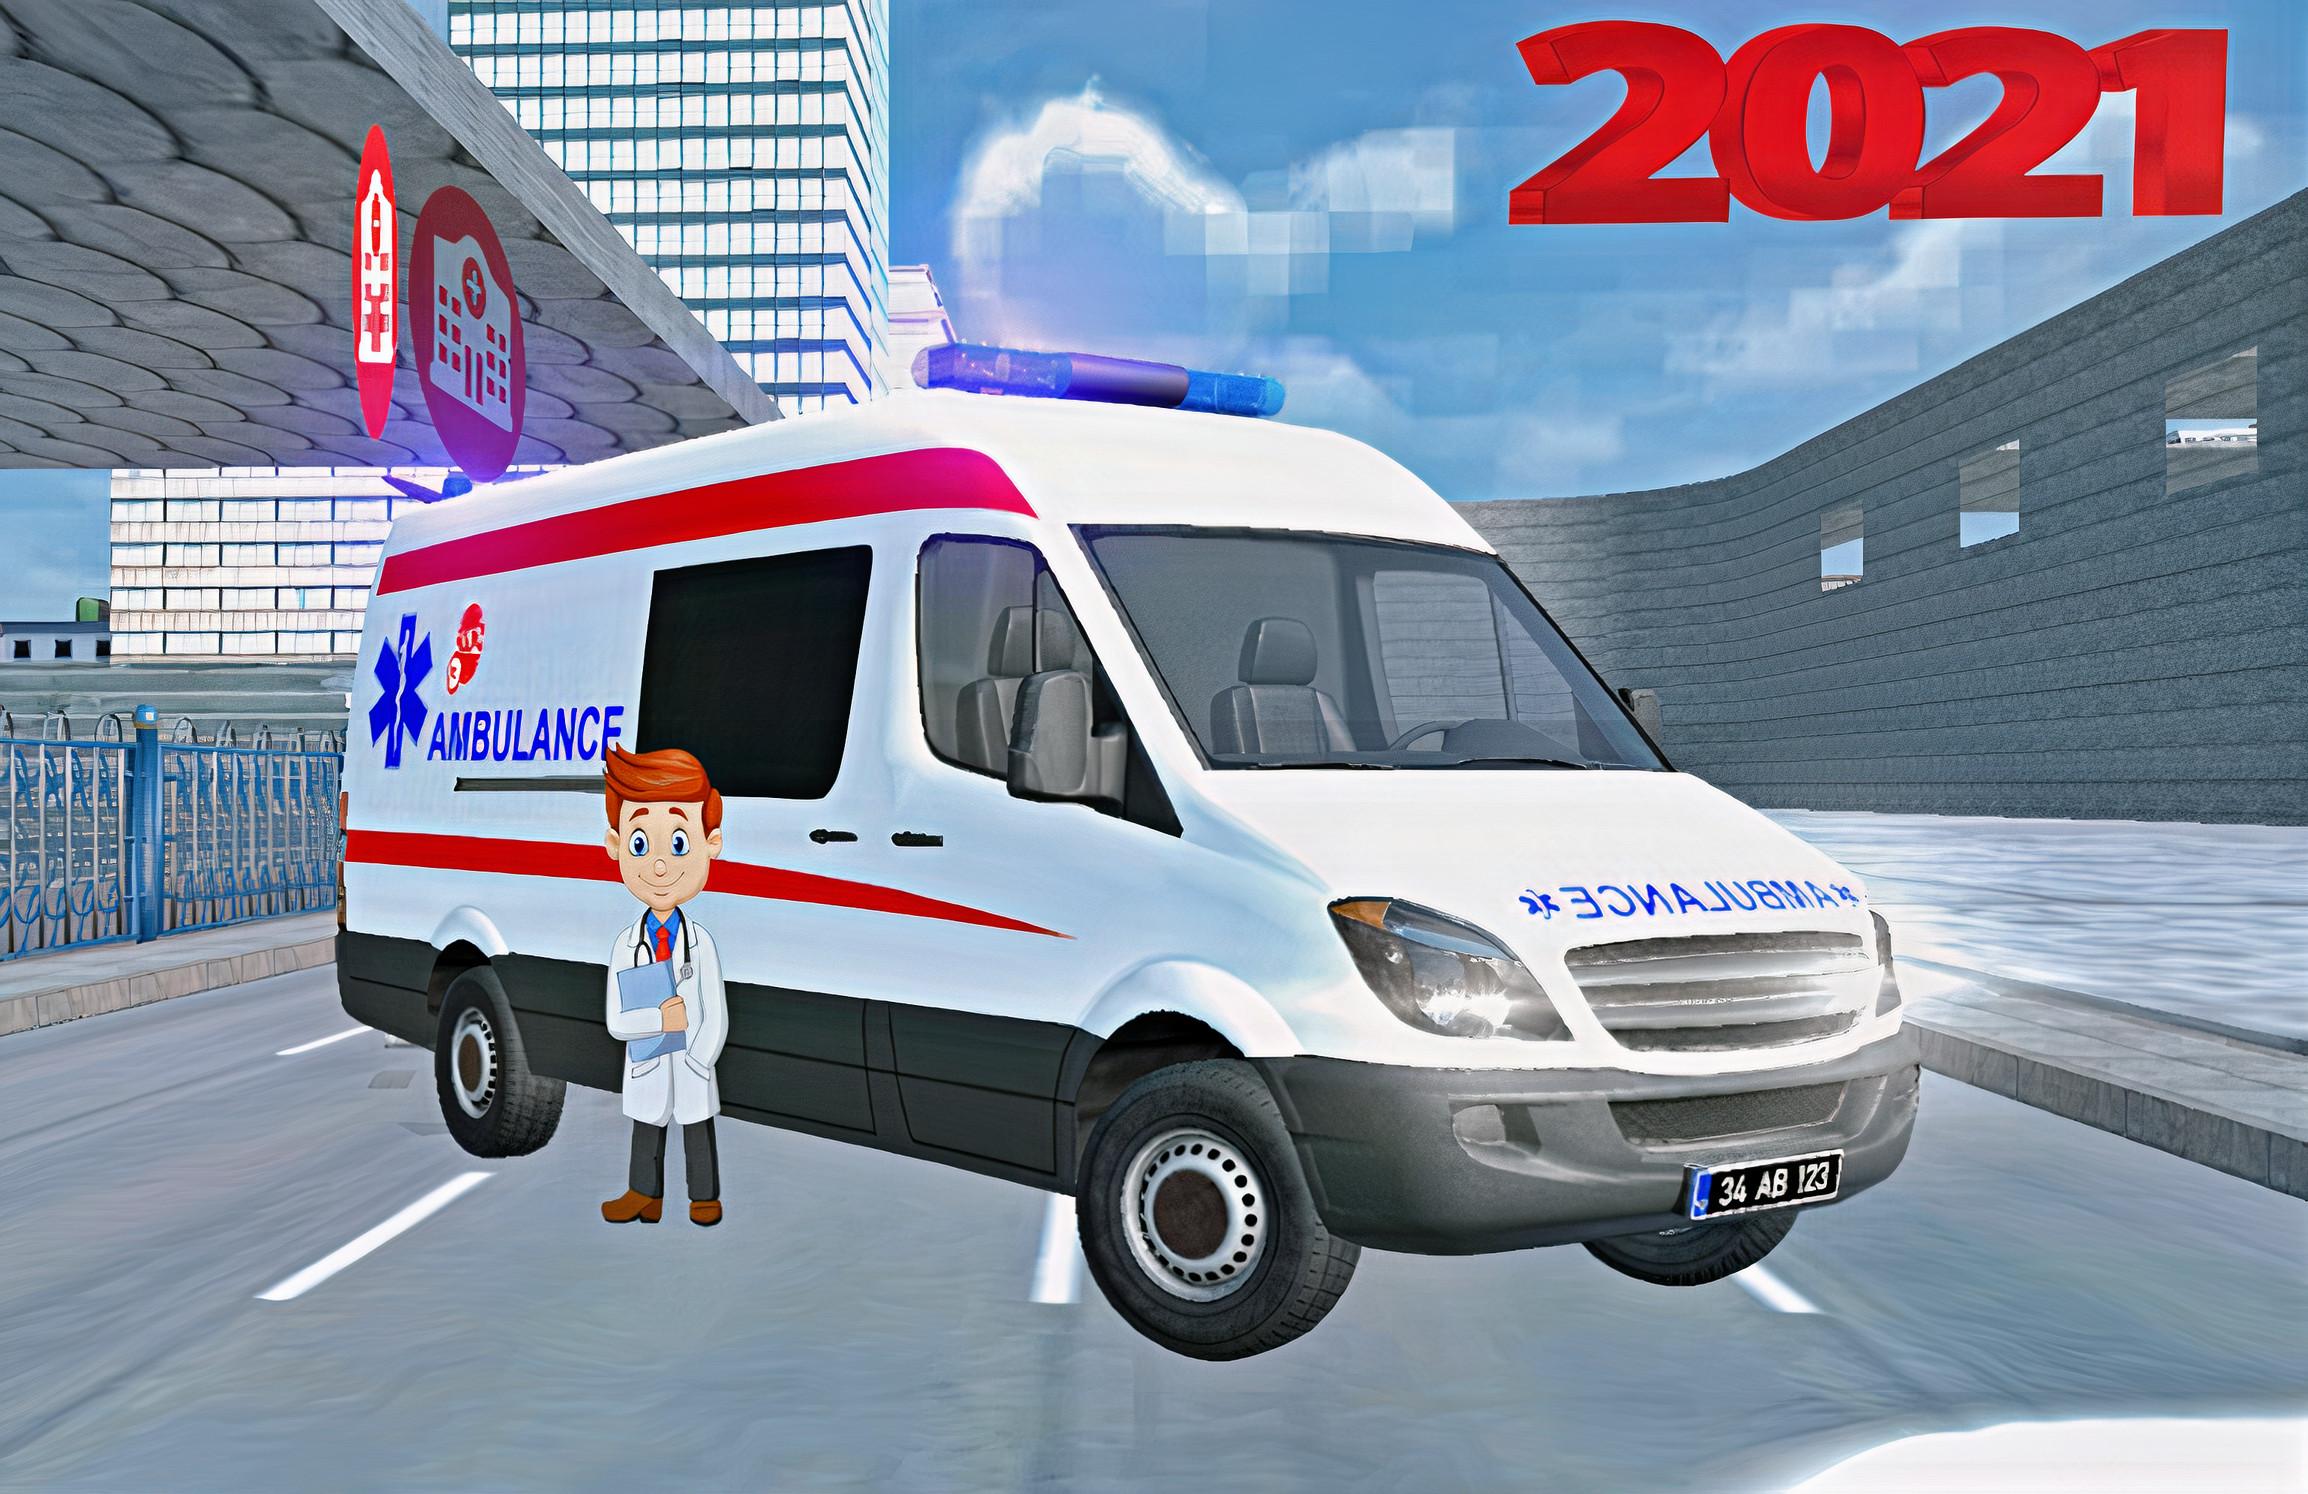 Real 112 Ambulance Car Game: Ambulance Games 2021 1.1 Screenshot 12